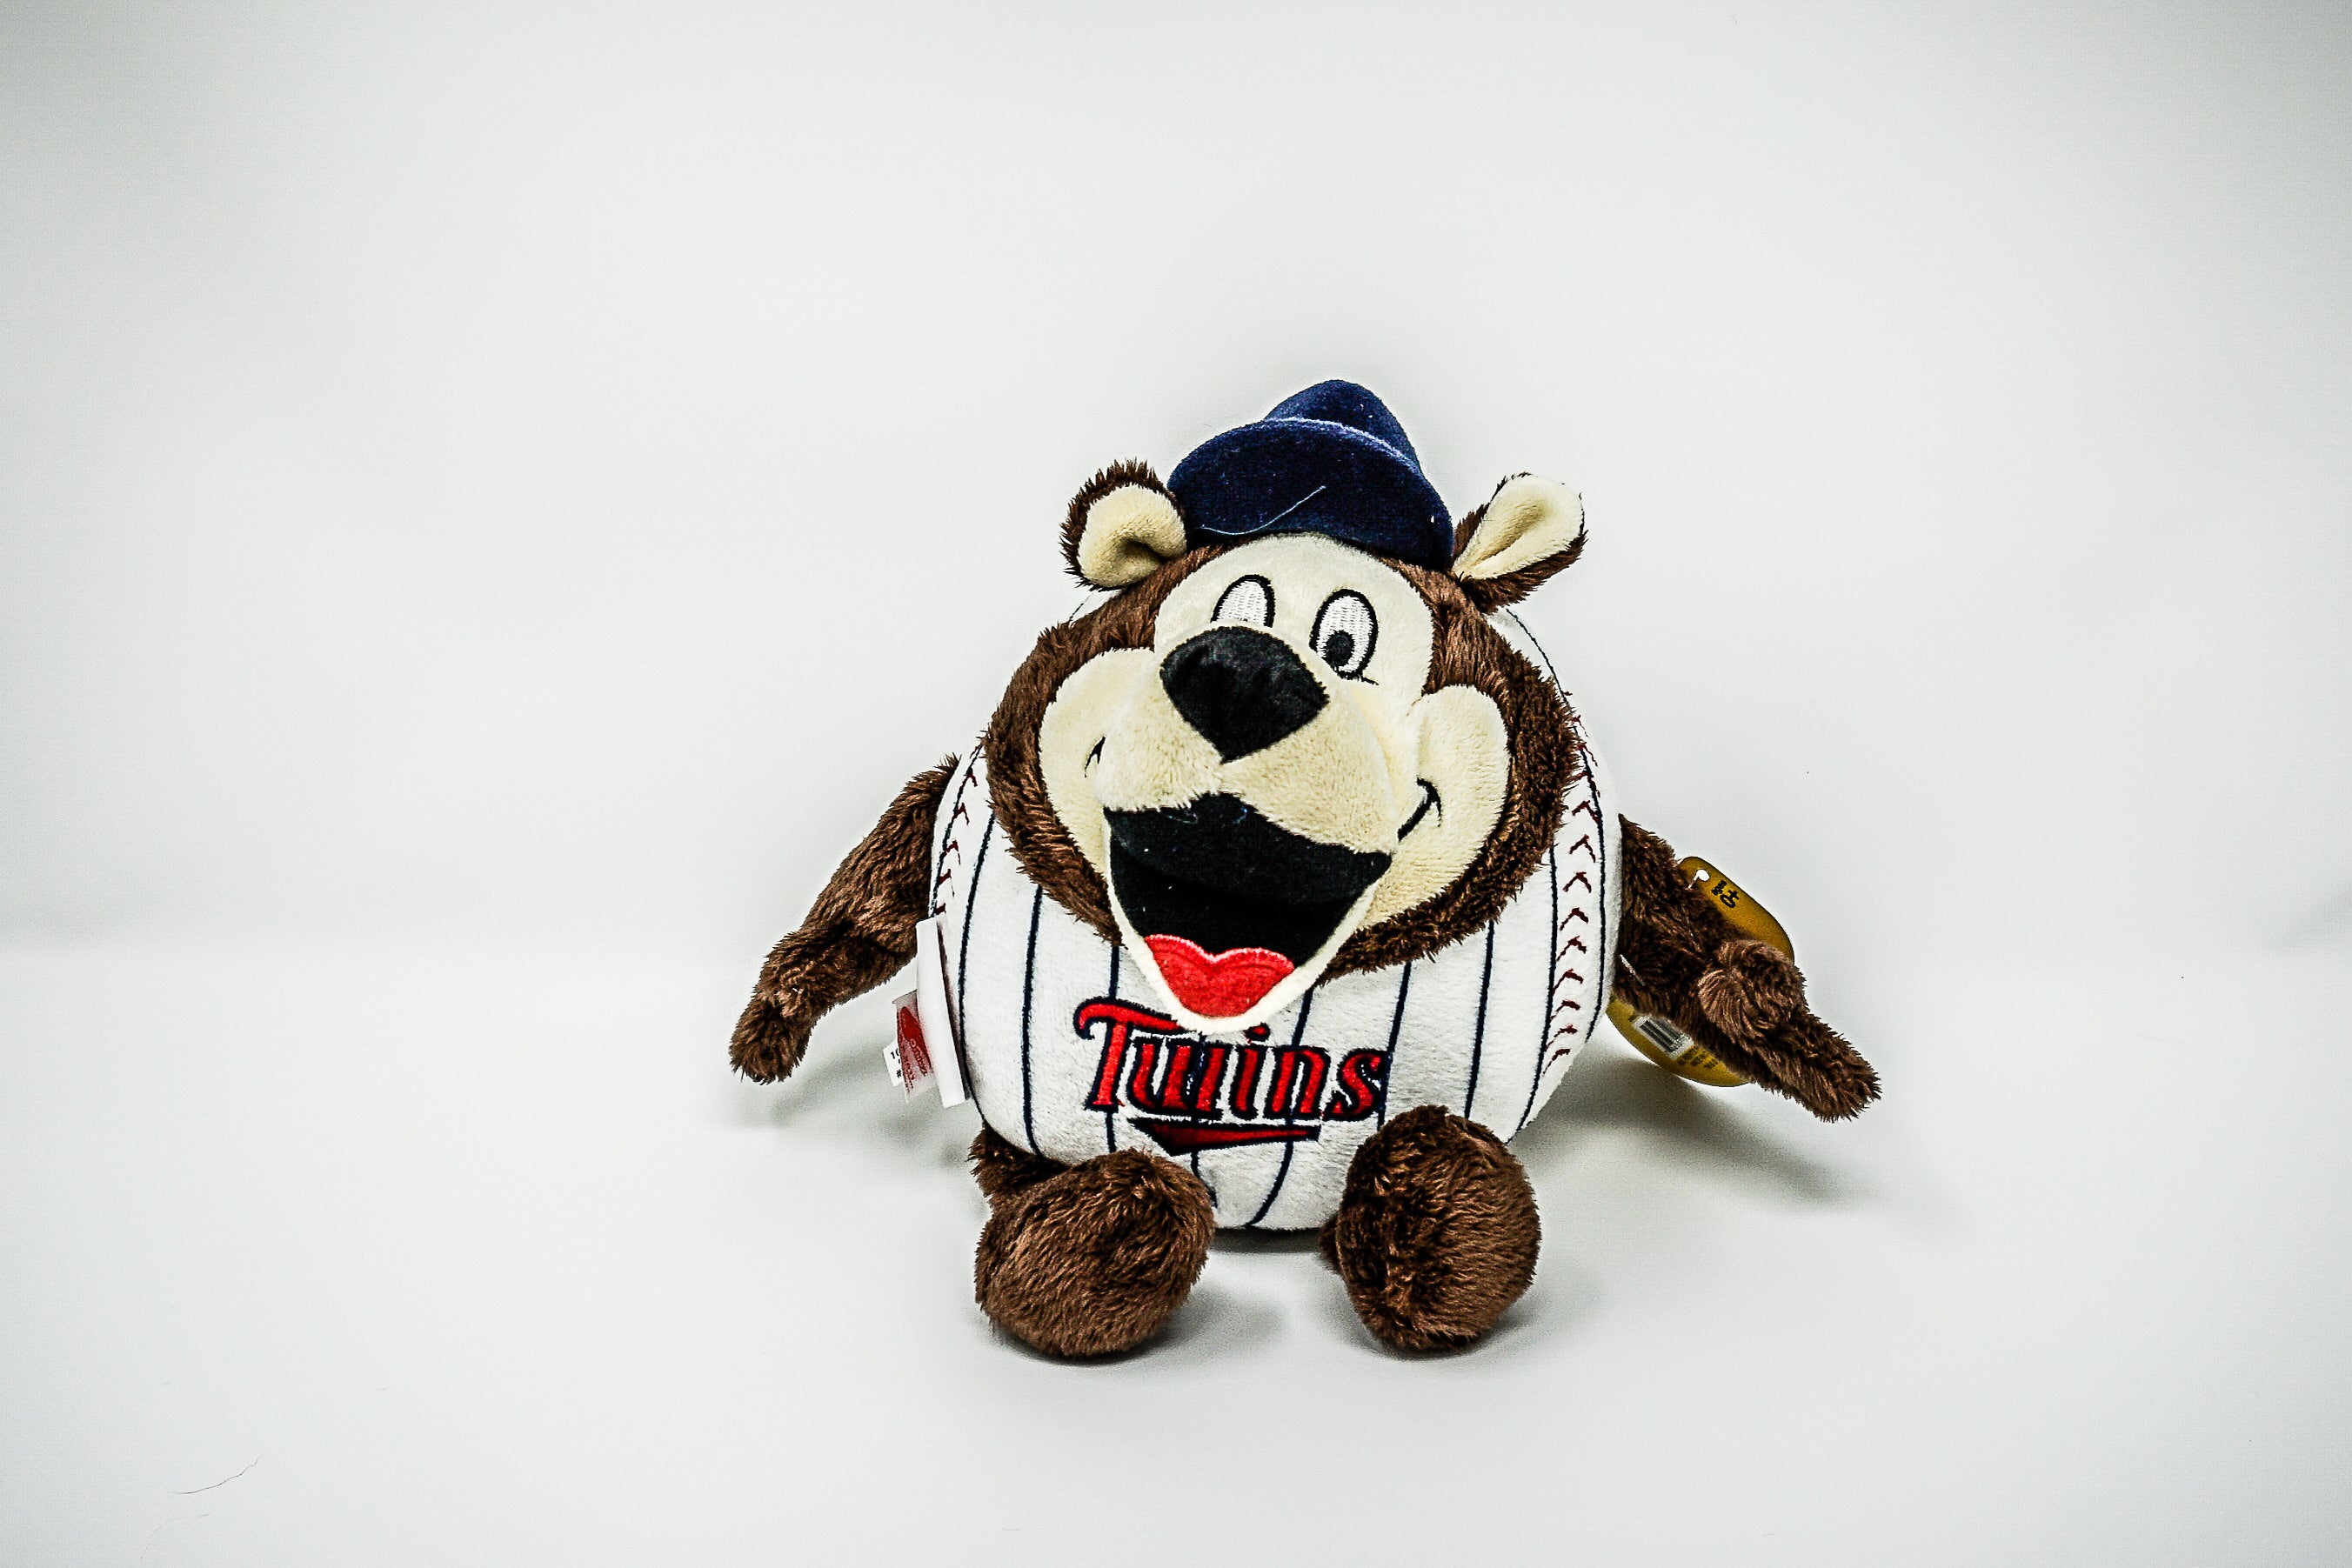 Minnesota Twins T.C. Bear Minimalist MLB Mascots Collection 12 x